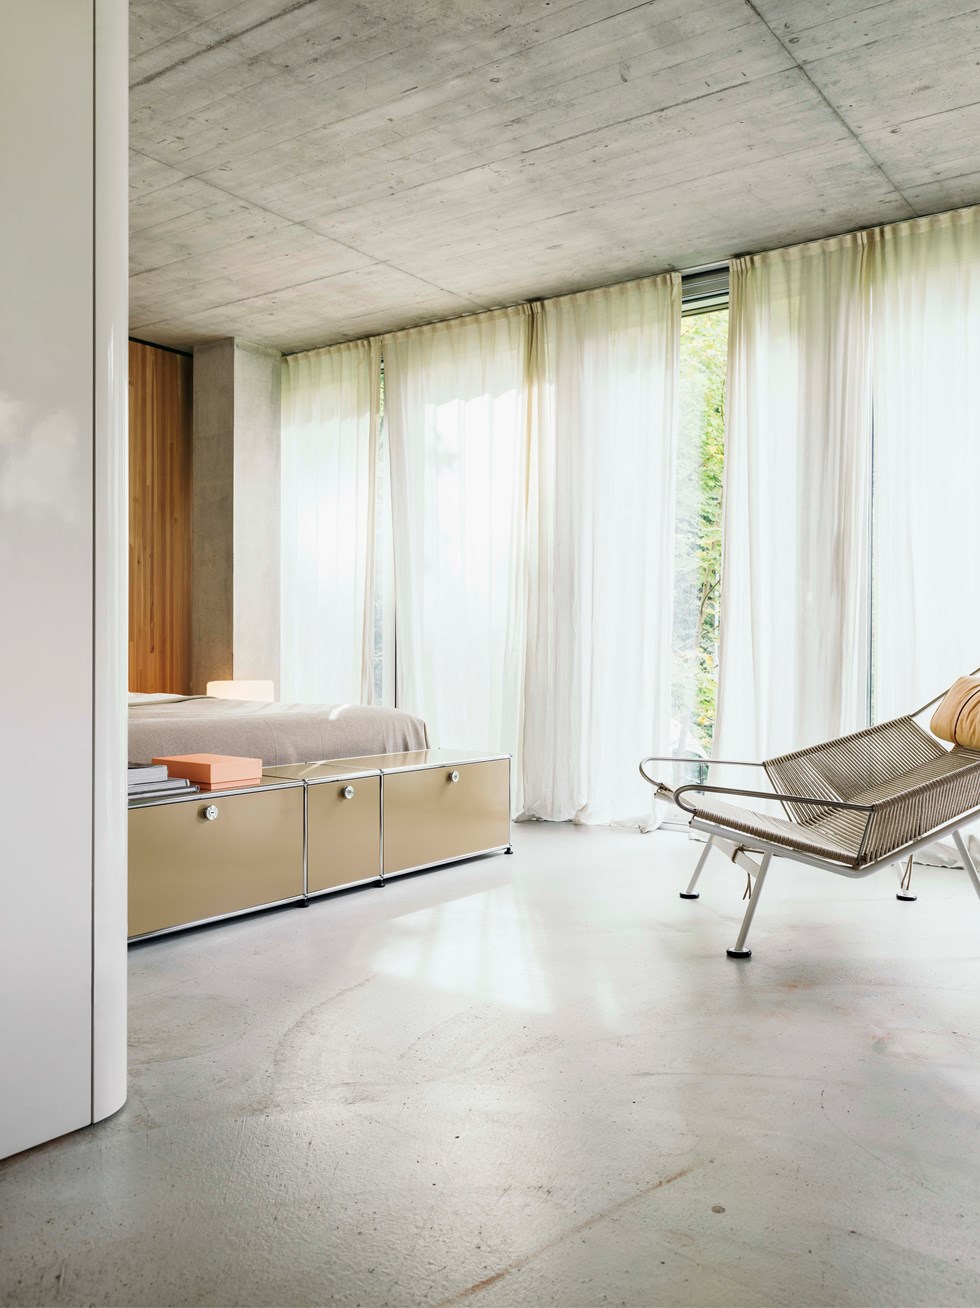 Mobili beige per la camera da letto su misura, in una casa in stile moderno nei toni del bianco